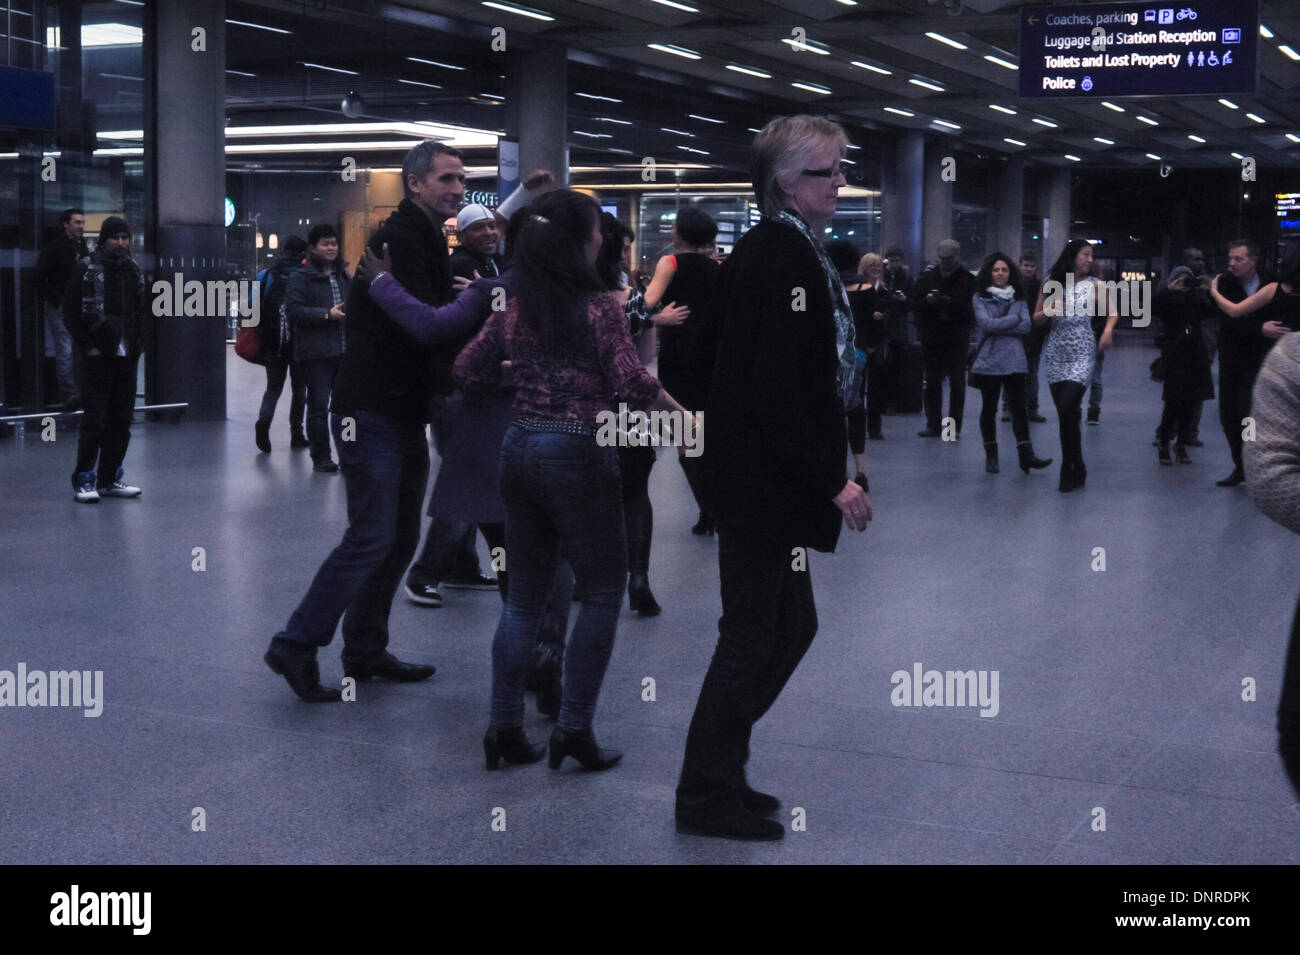 Londra, Regno Unito. 4 gennaio, 2014. Flashmob ballerini eseguono la rueda alla salsa flashmob alla Stazione di St Pancras. Londra. Rondelle 8,15pm sabato 4 gennaio. Credito: Carole Edrich/Alamy Live News Foto Stock